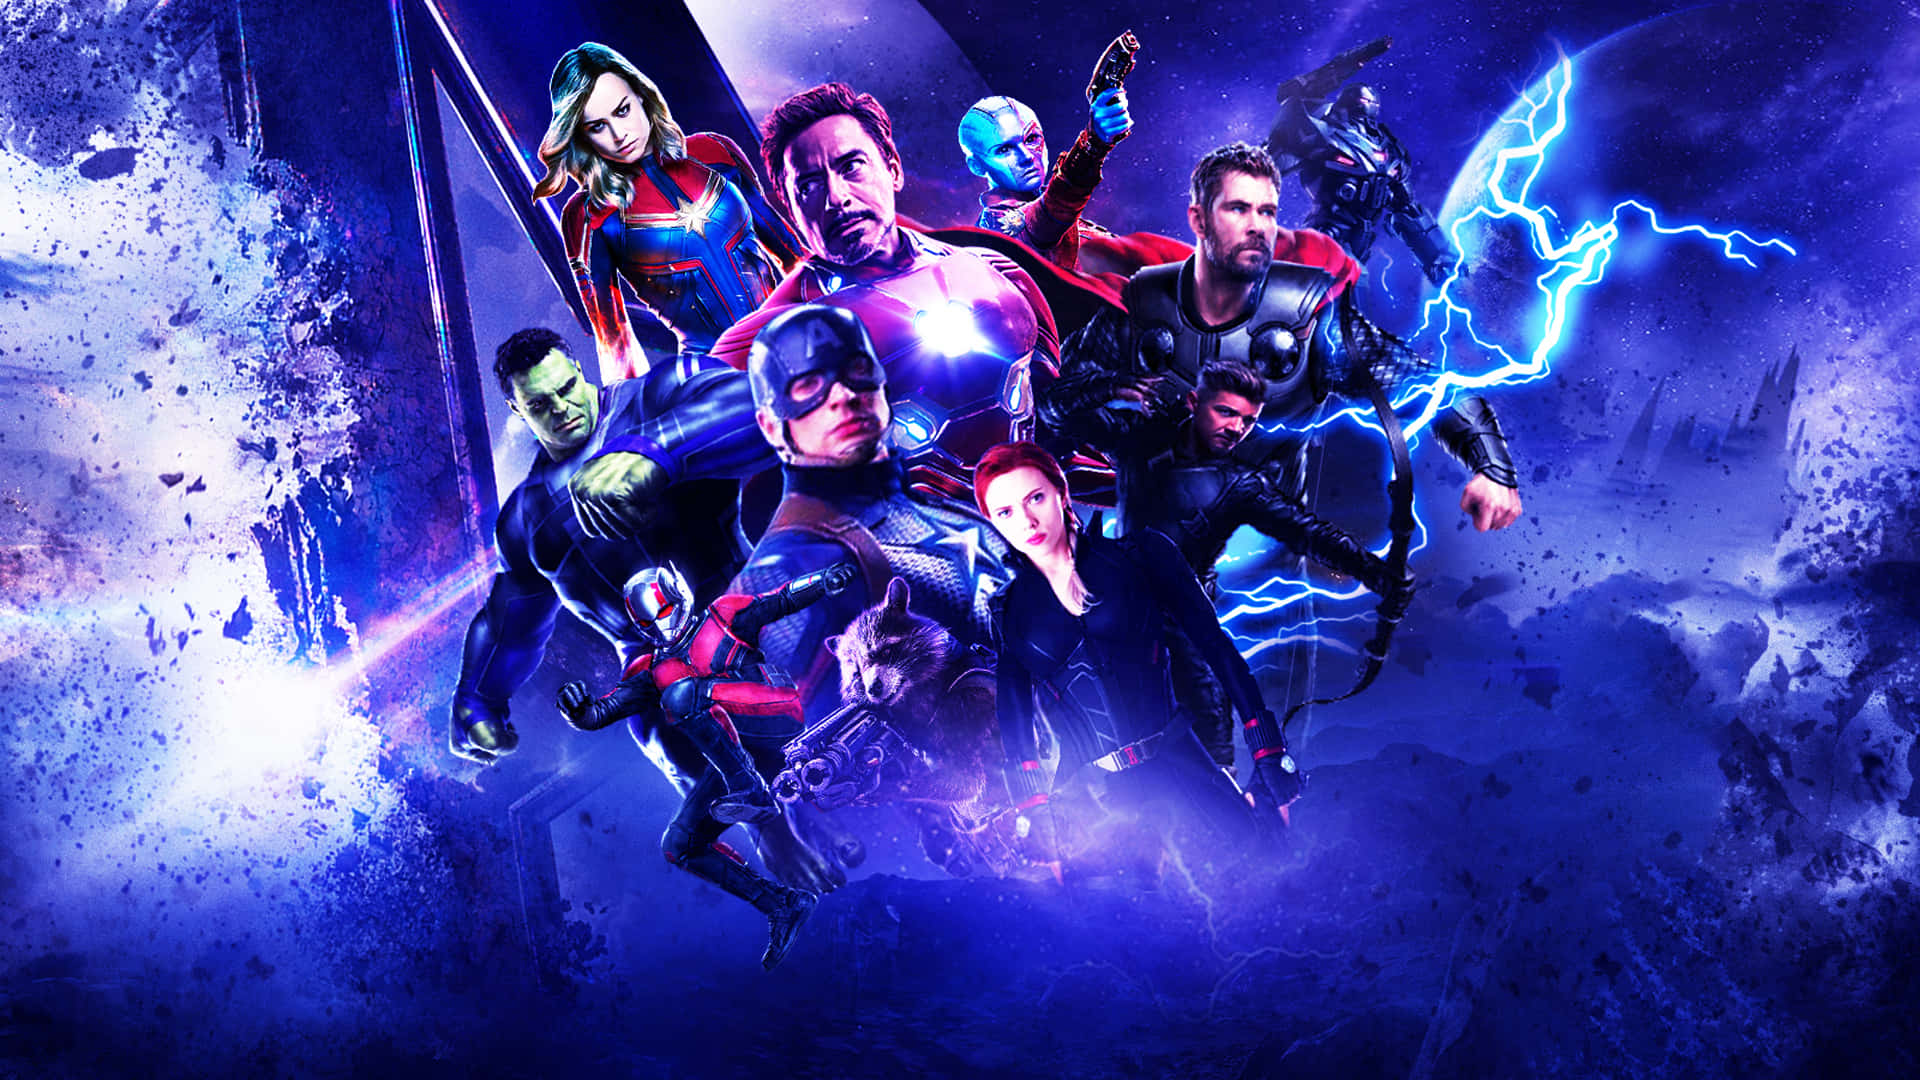 The Avengers Unite in Endgame